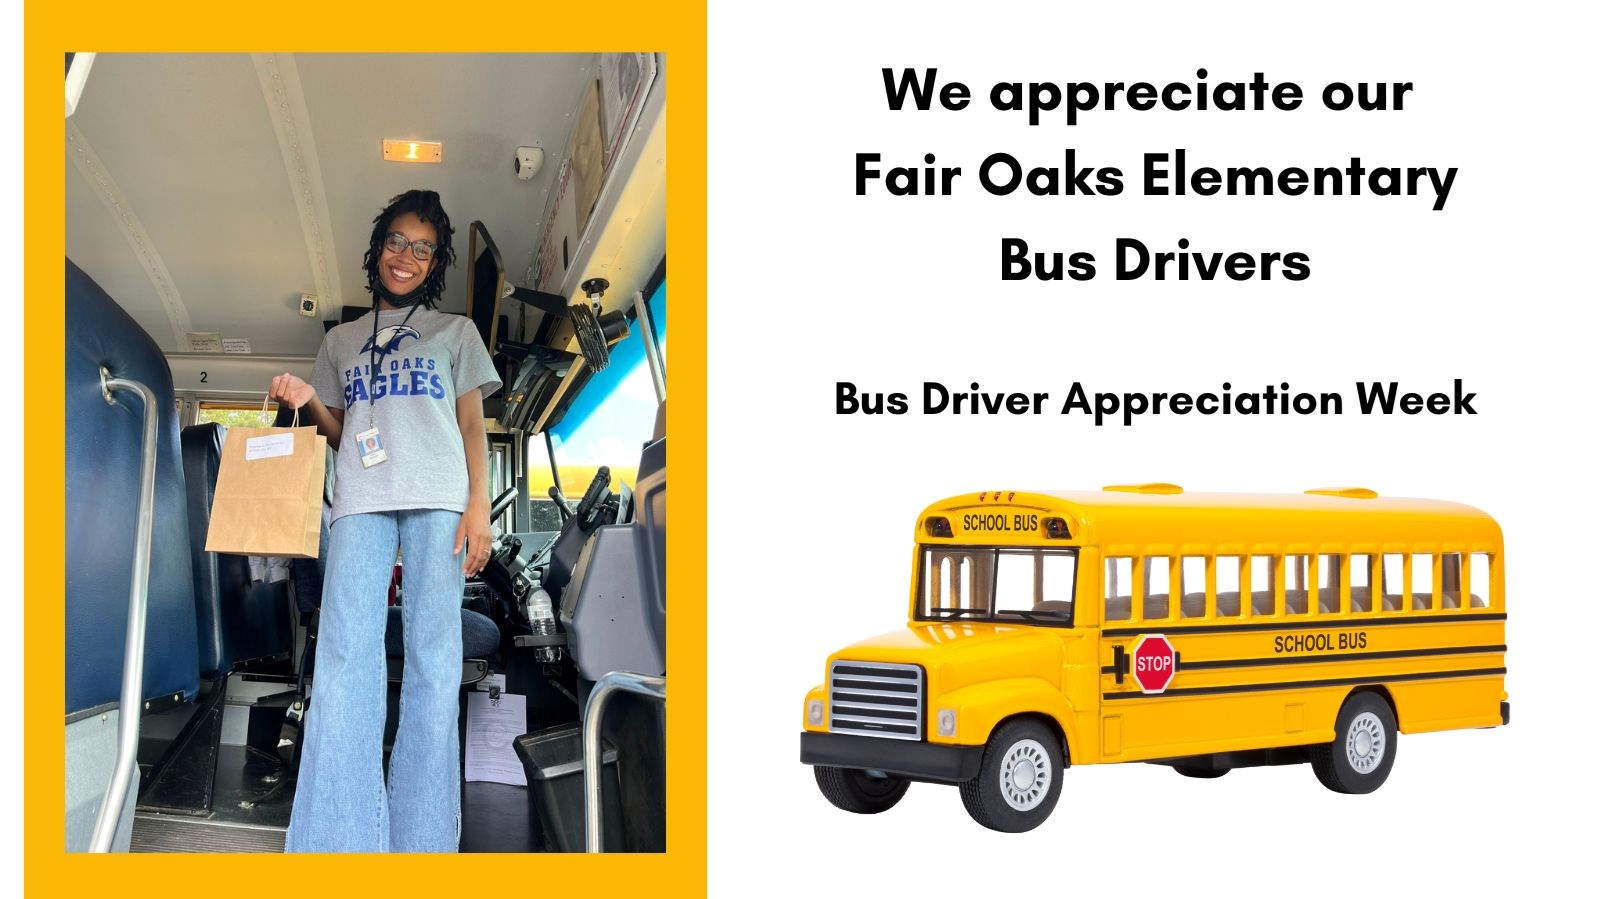 Bus Driver Appreciation Week